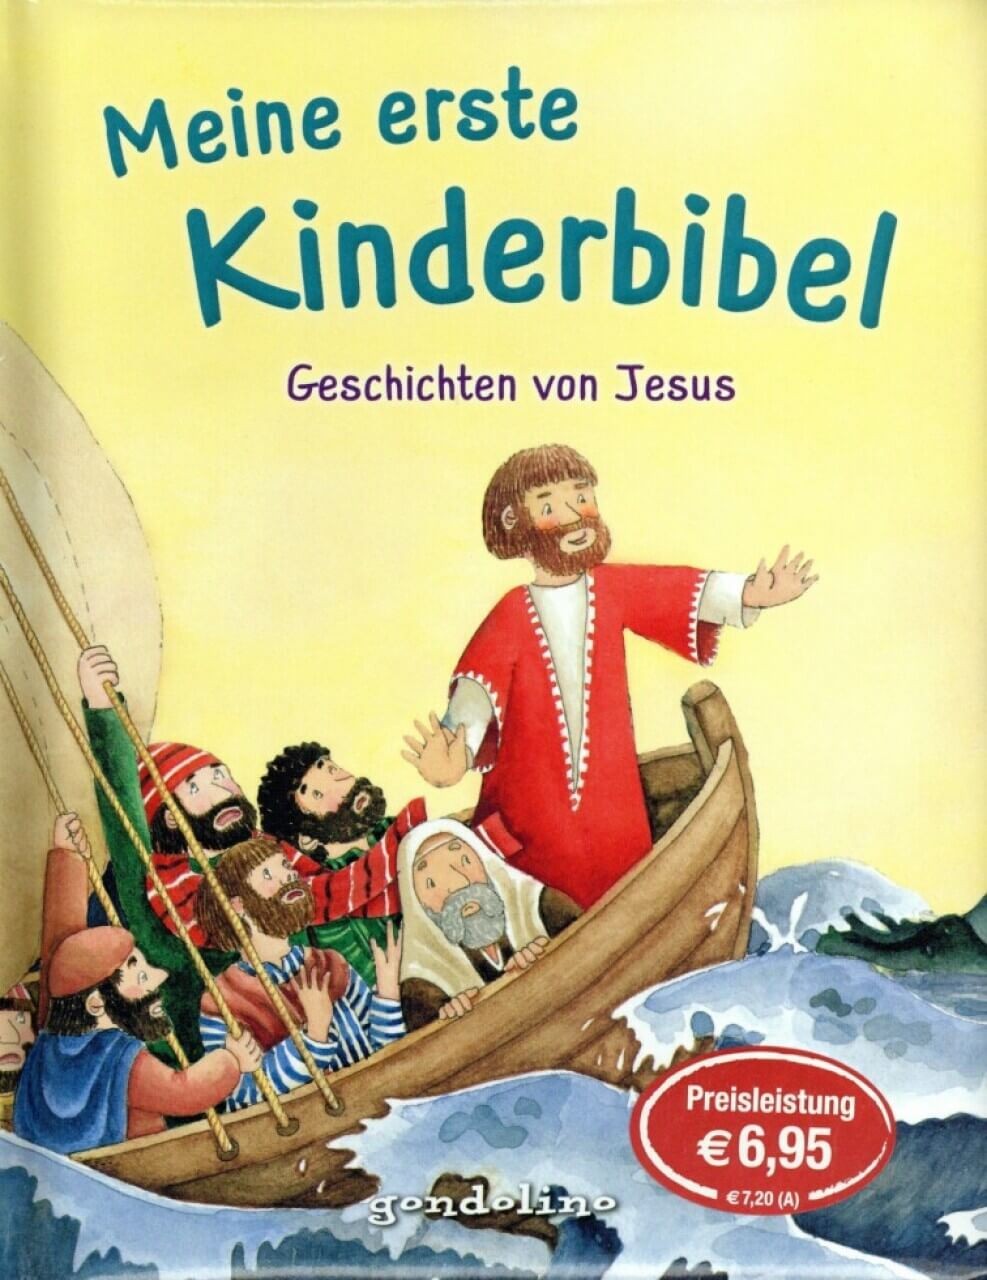 Kinderbuch Meine erste Kinderbibel - Geschichten von Jesus. Als Geschenkbuch für Kinder, im Kindergo von gondolino